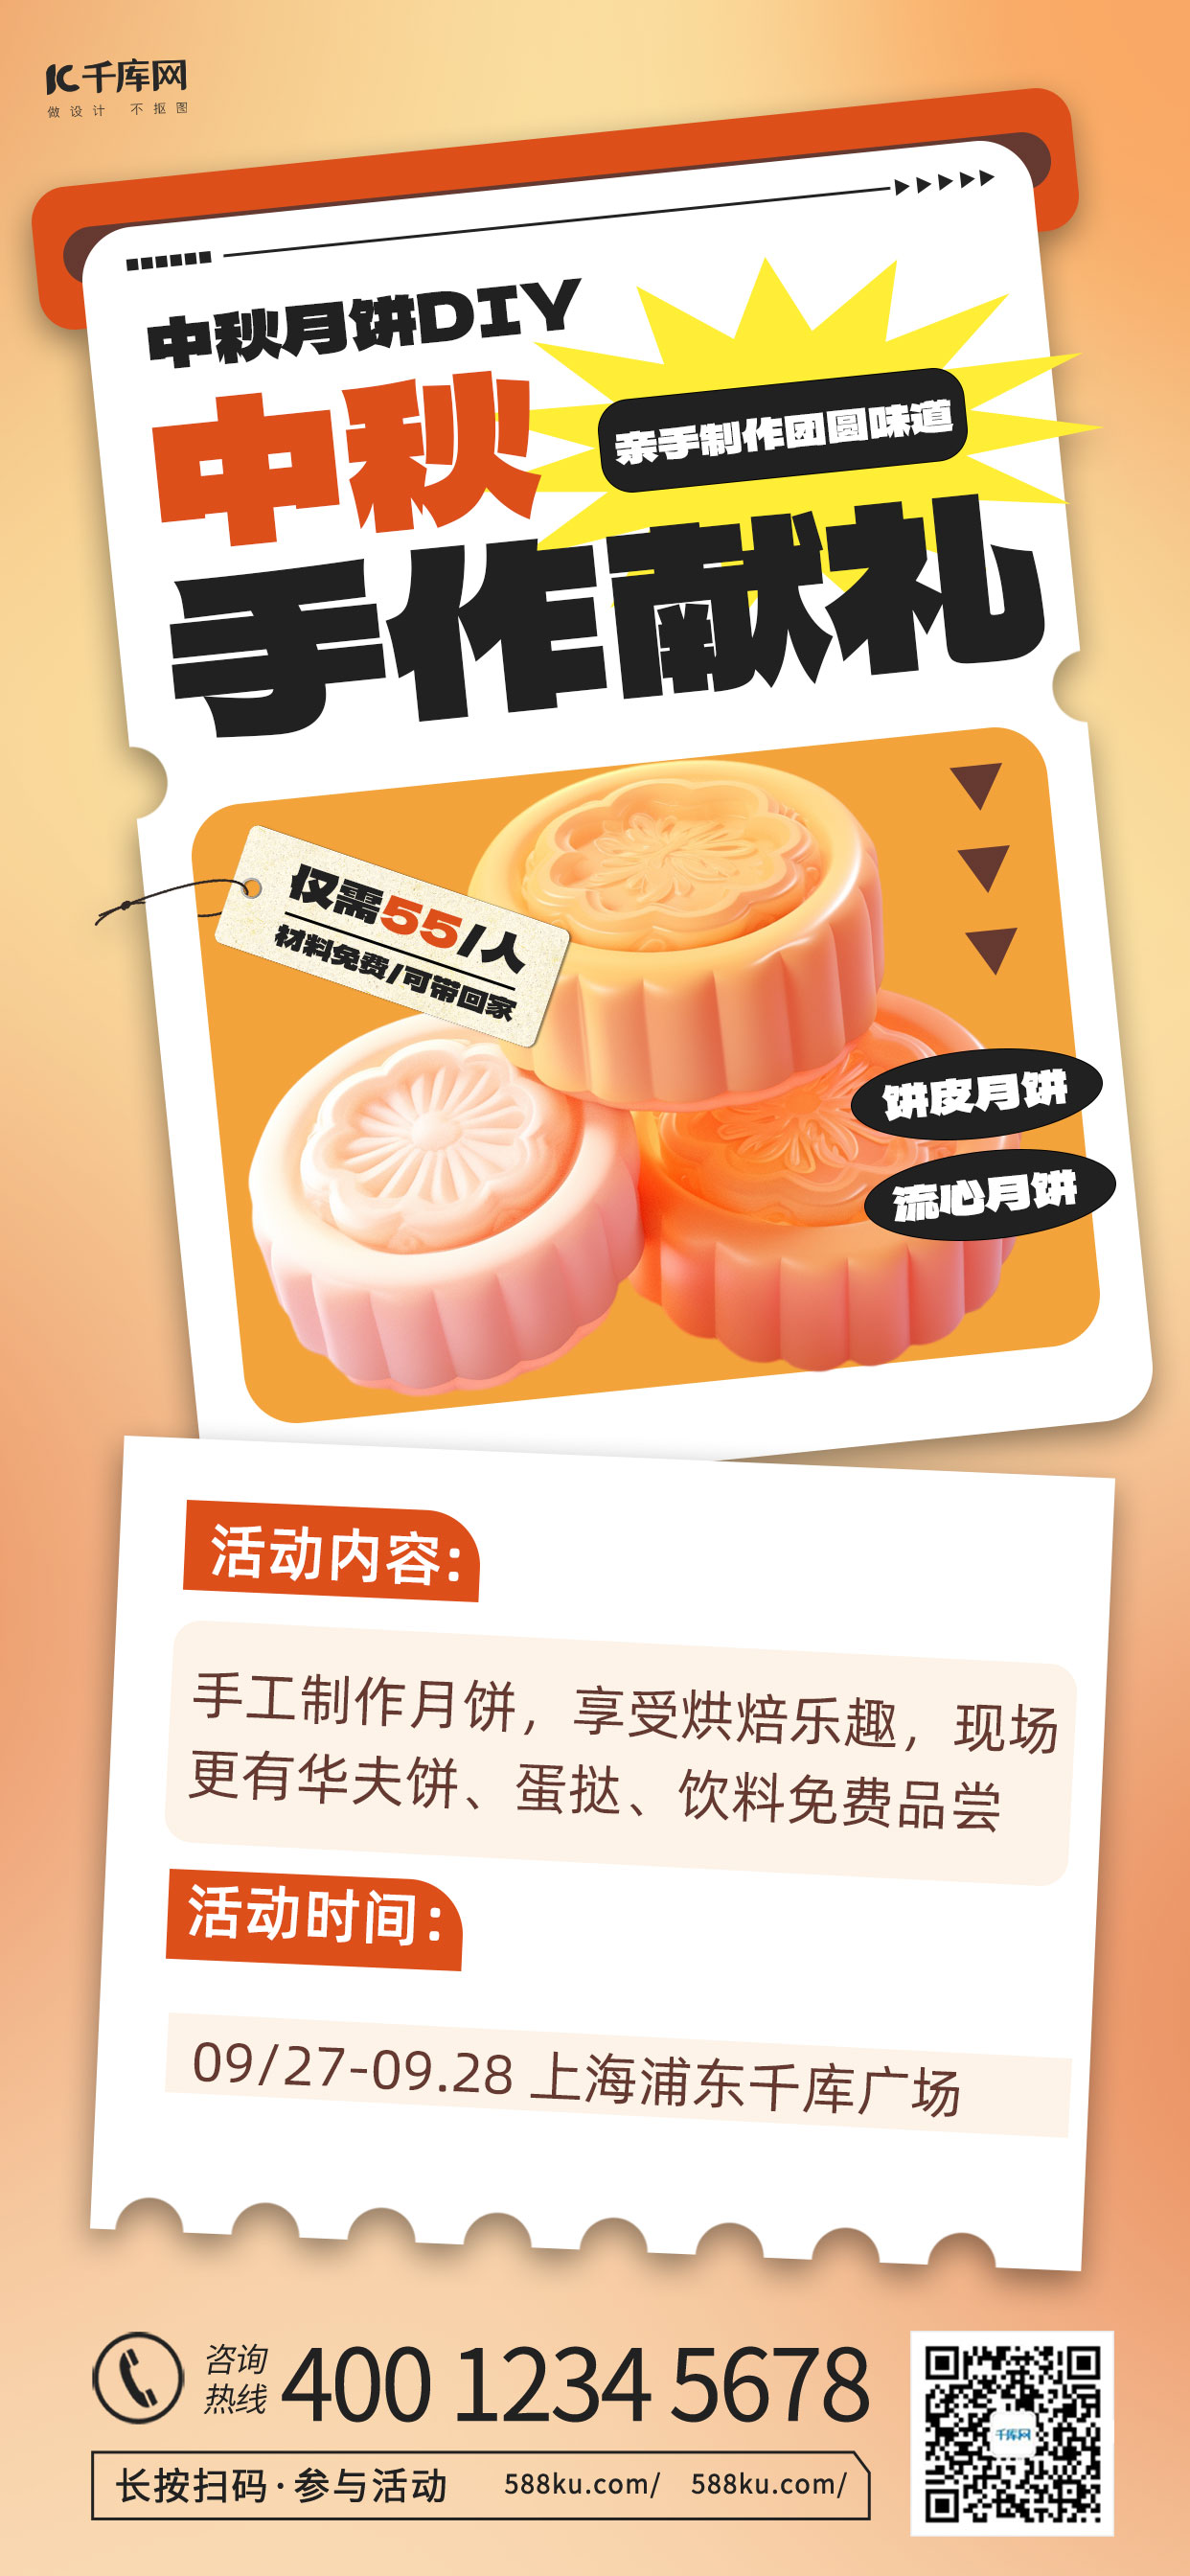 中秋活动月饼促销橙色渐变 3d海报图片